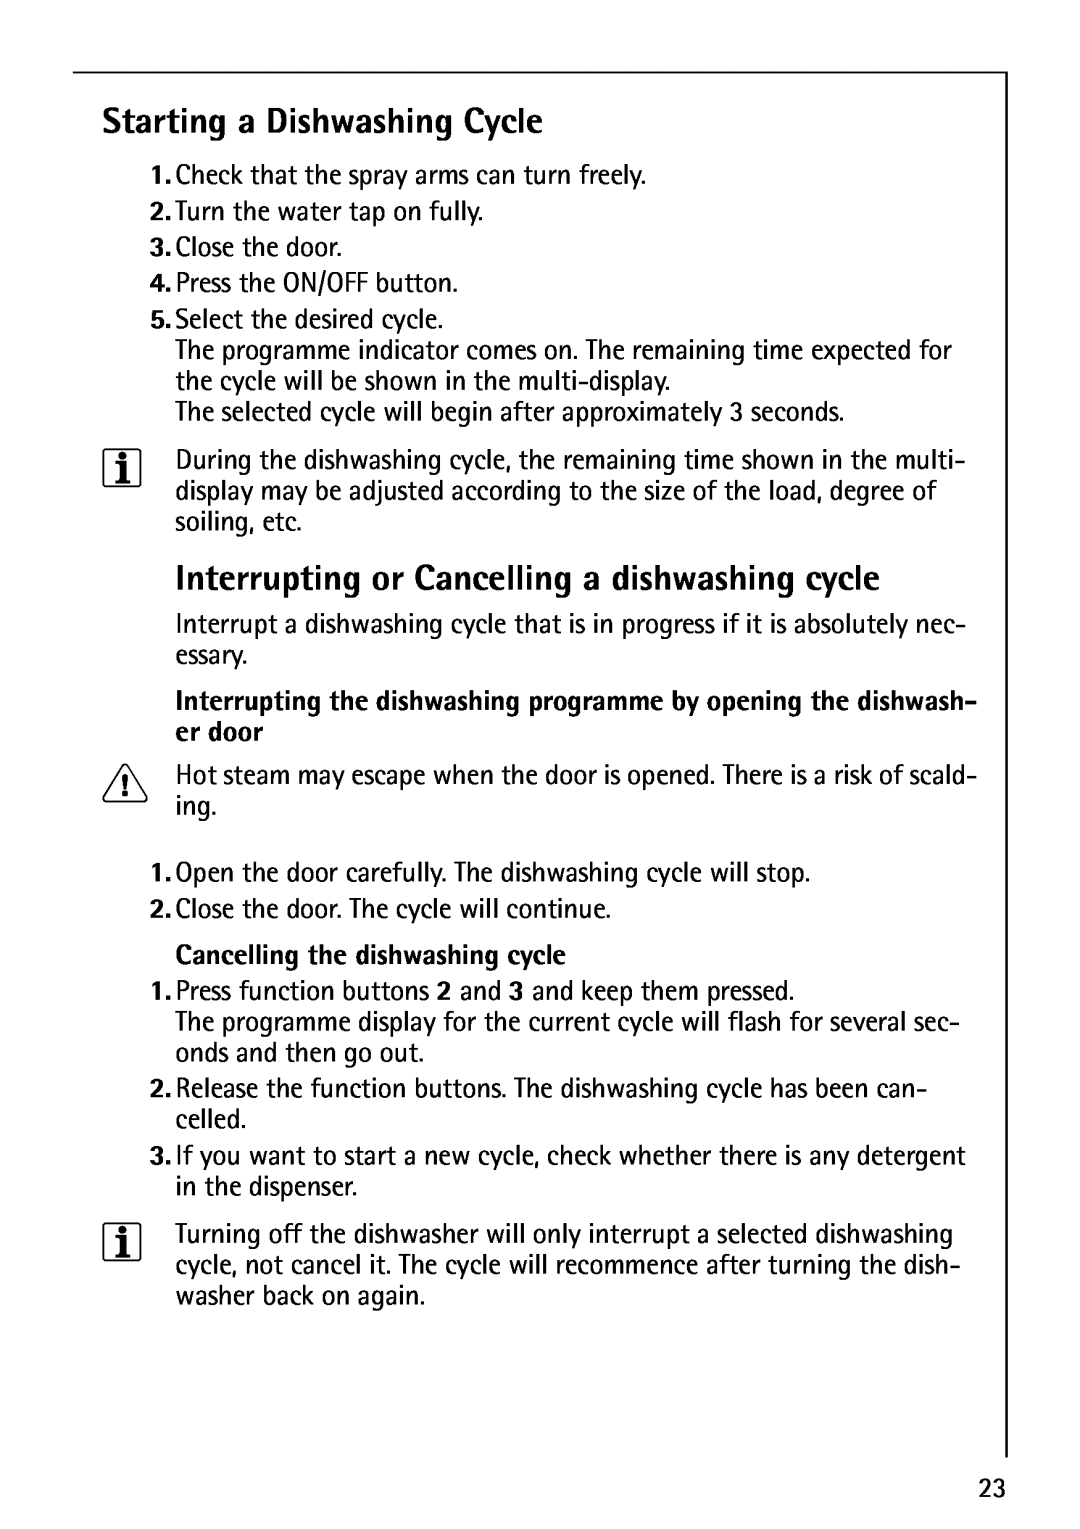 AEG 40850 Starting a Dishwashing Cycle, Interrupting or Cancelling a dishwashing cycle, Cancelling the dishwashing cycle 